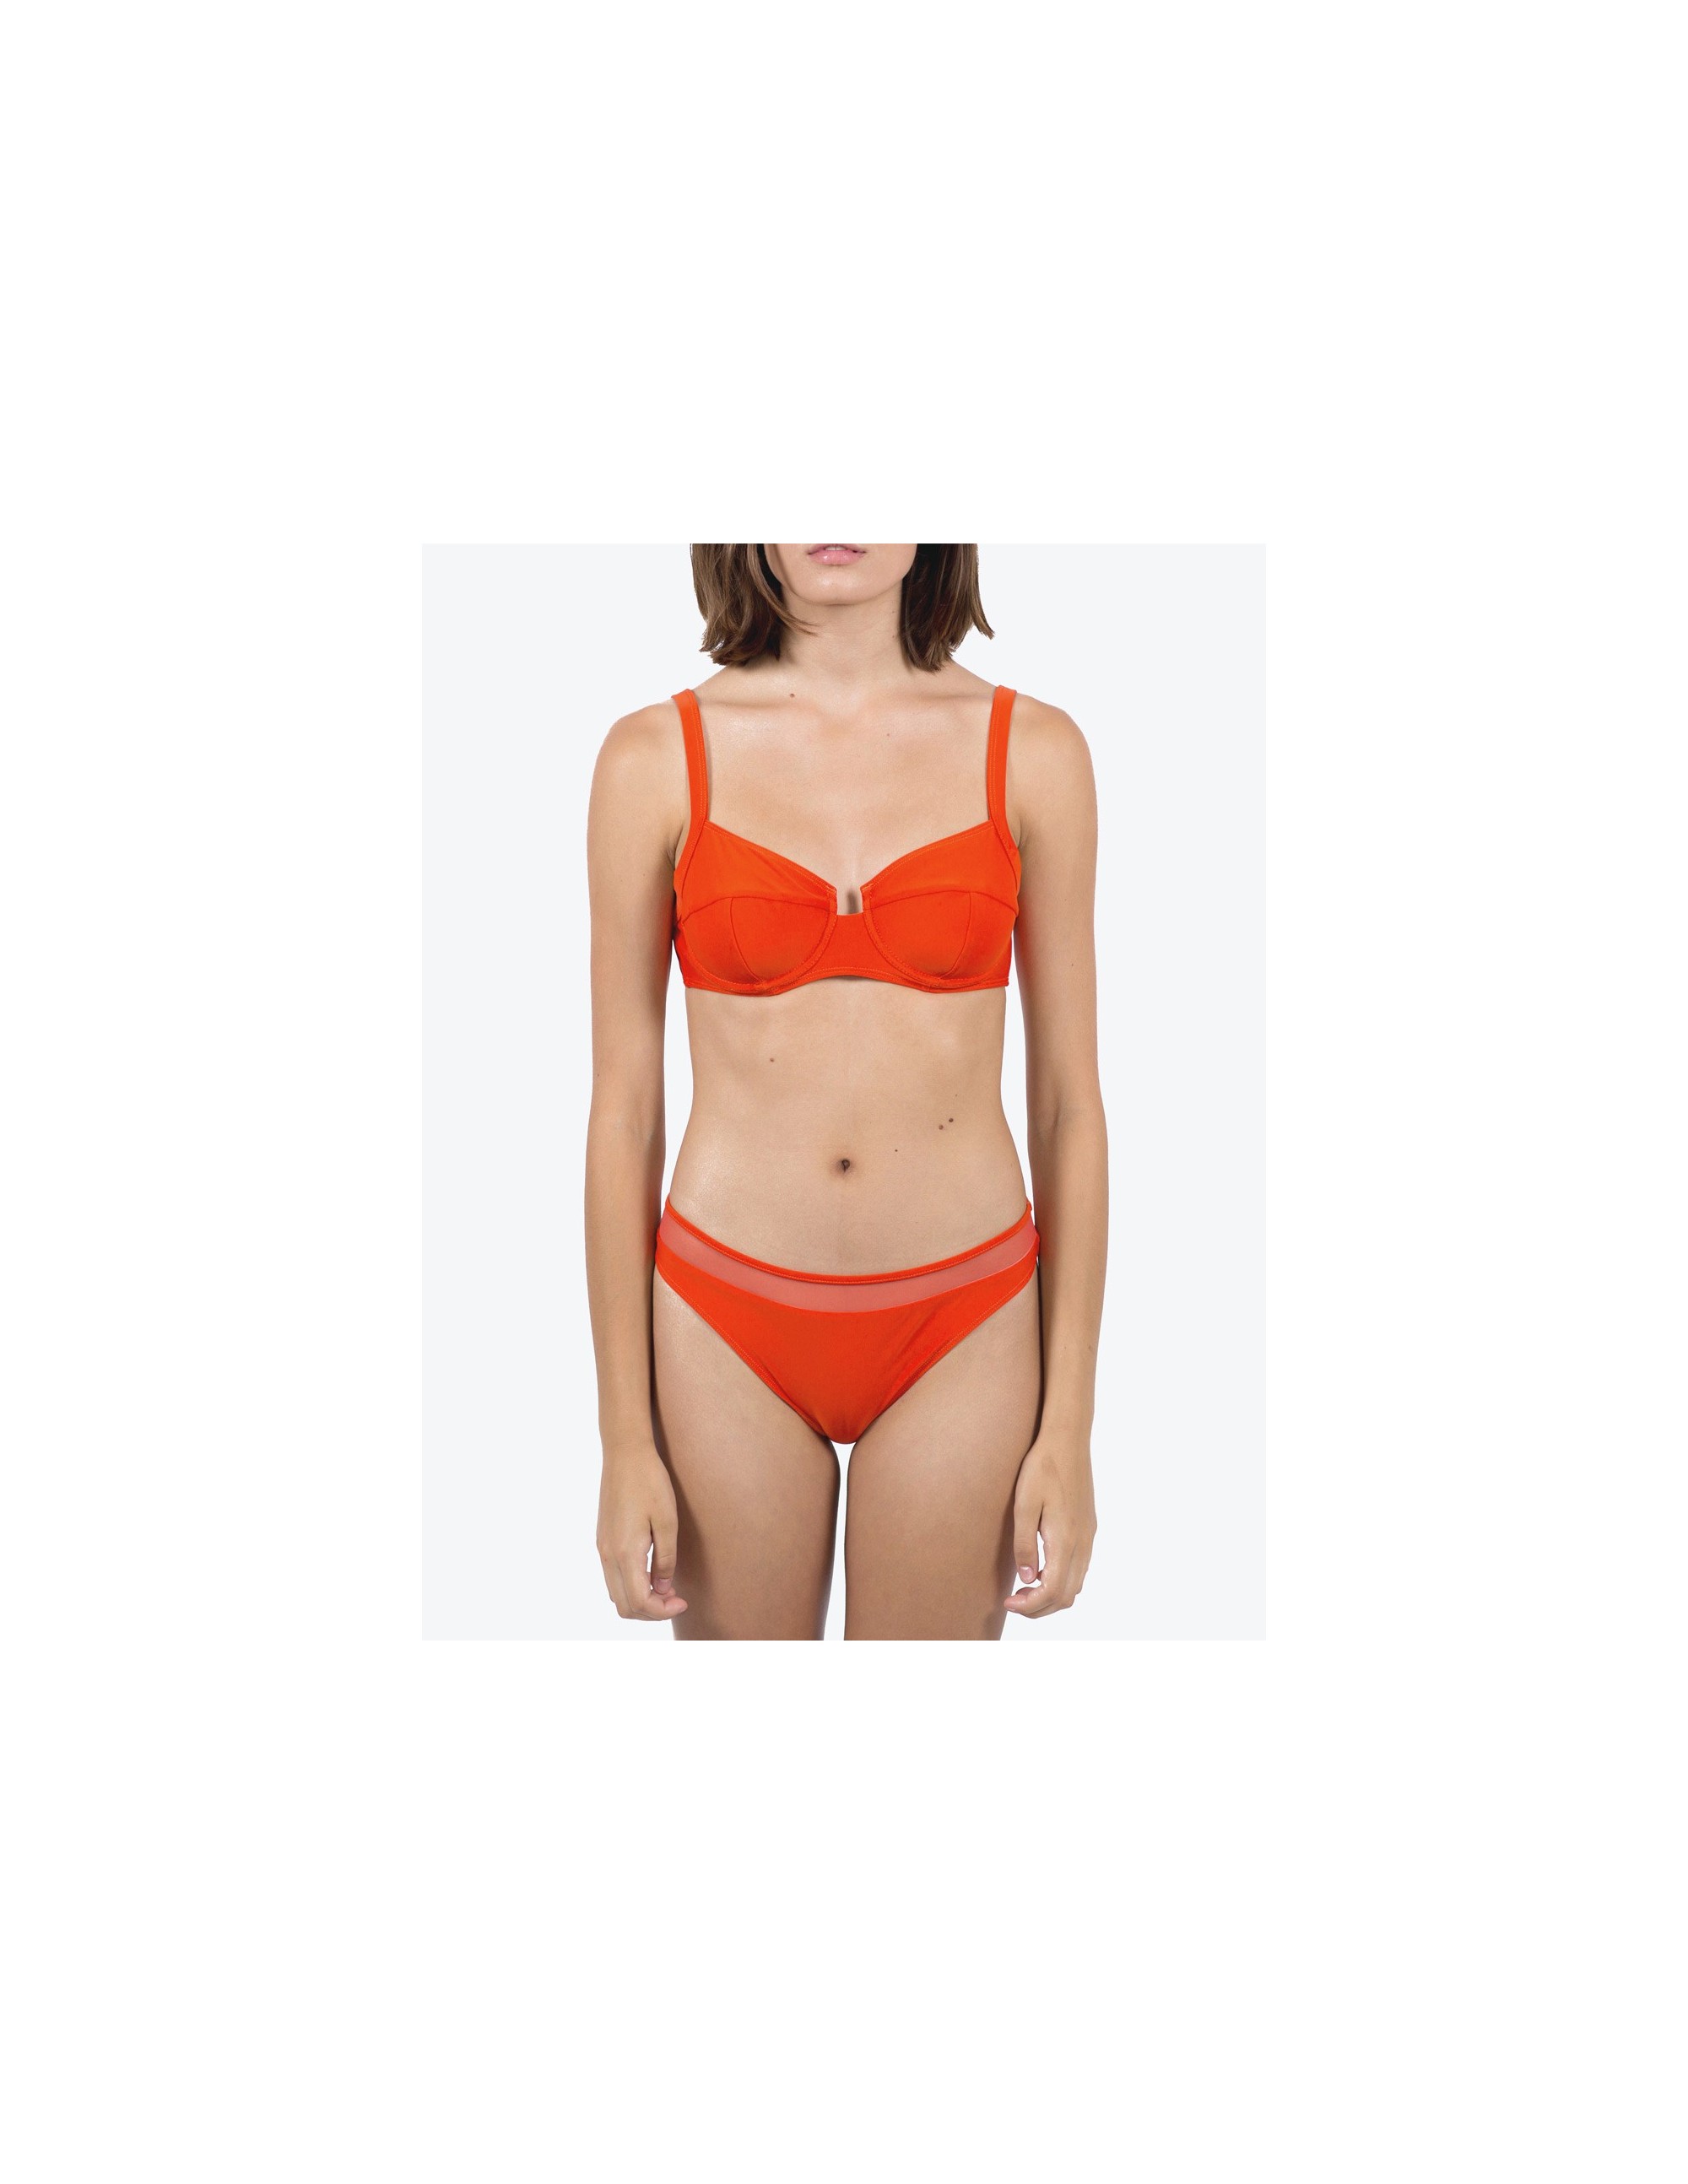 NAOS bikini top - CHARACTER RED